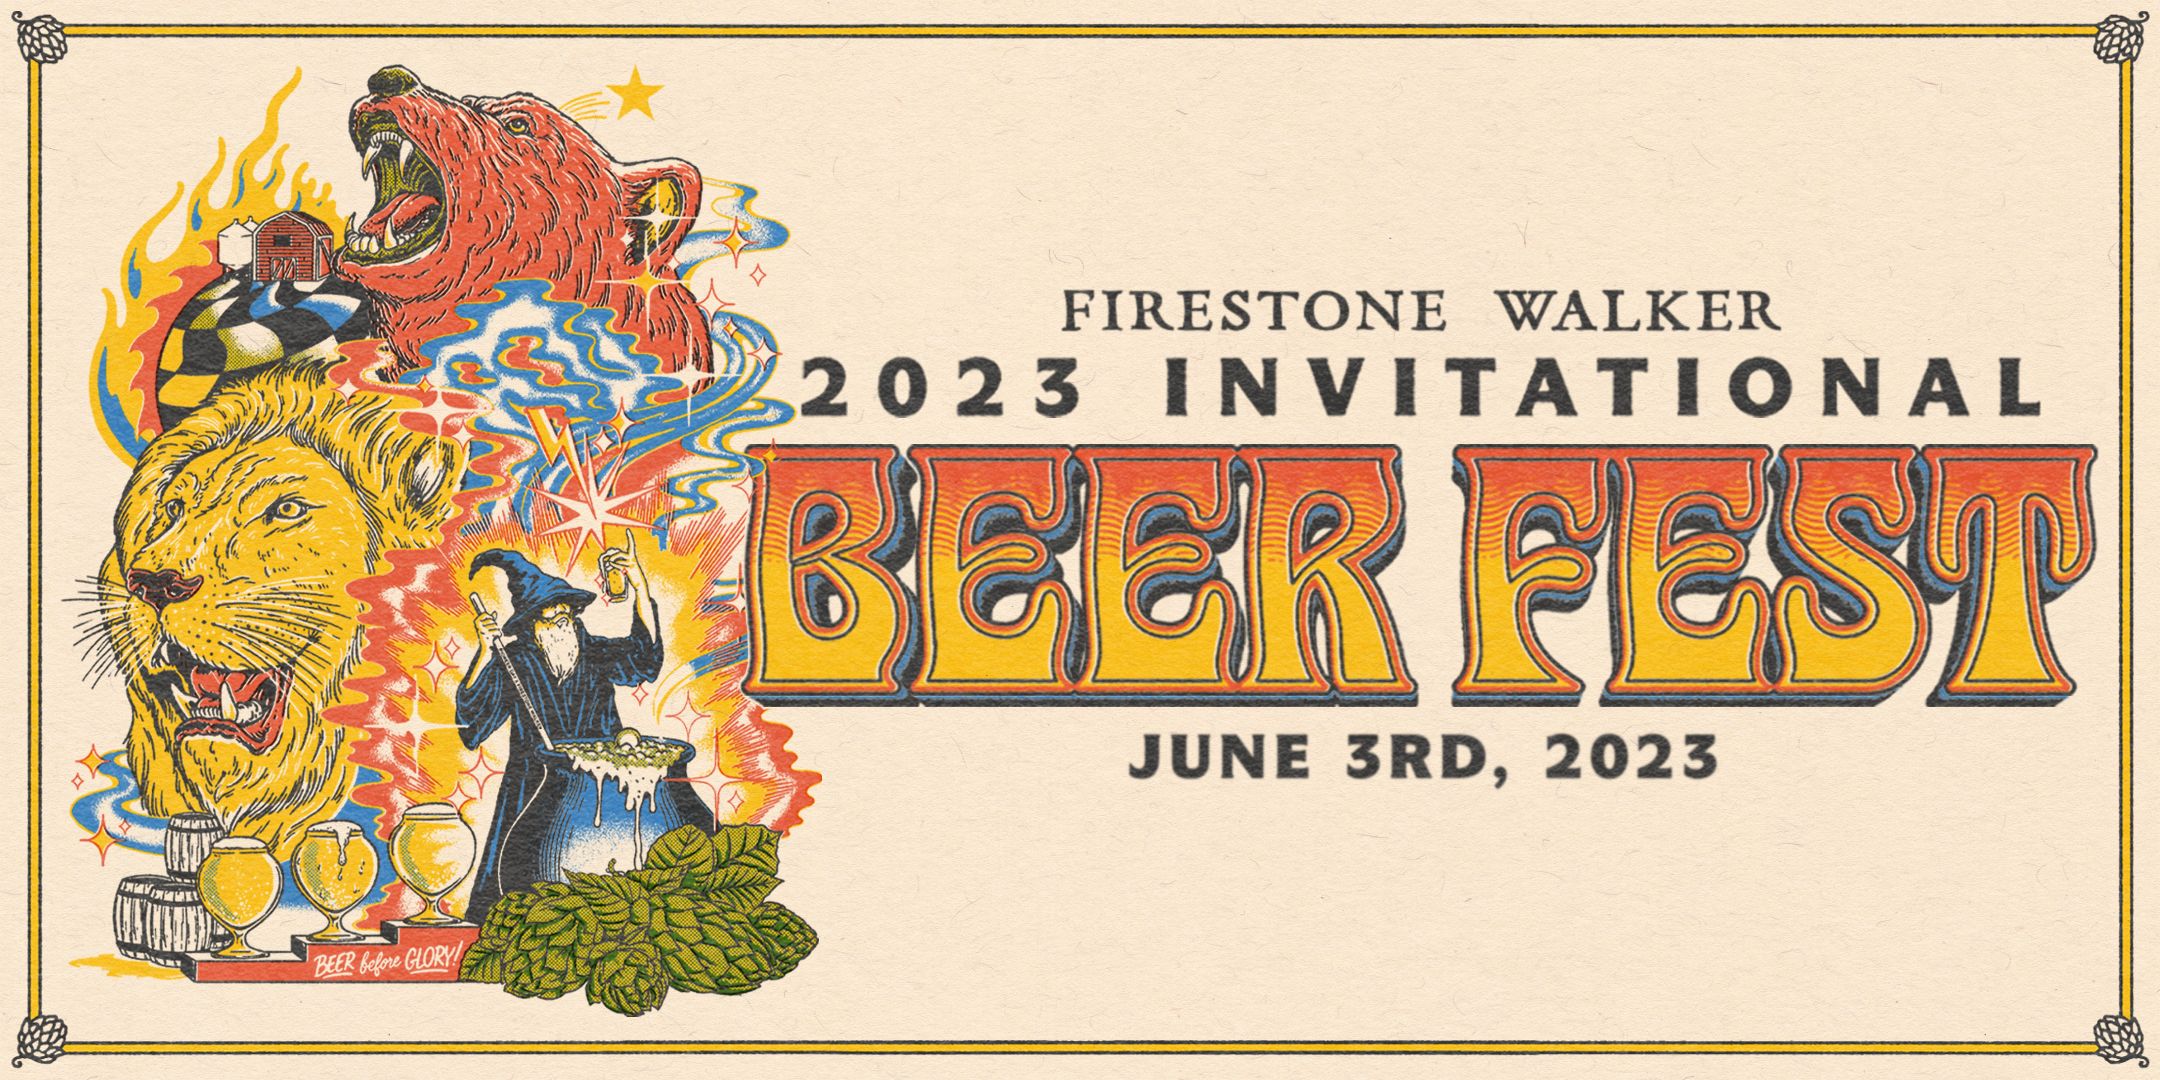 2023 Firestone Walker Invitational Beer Fest Tickets OnSale Date